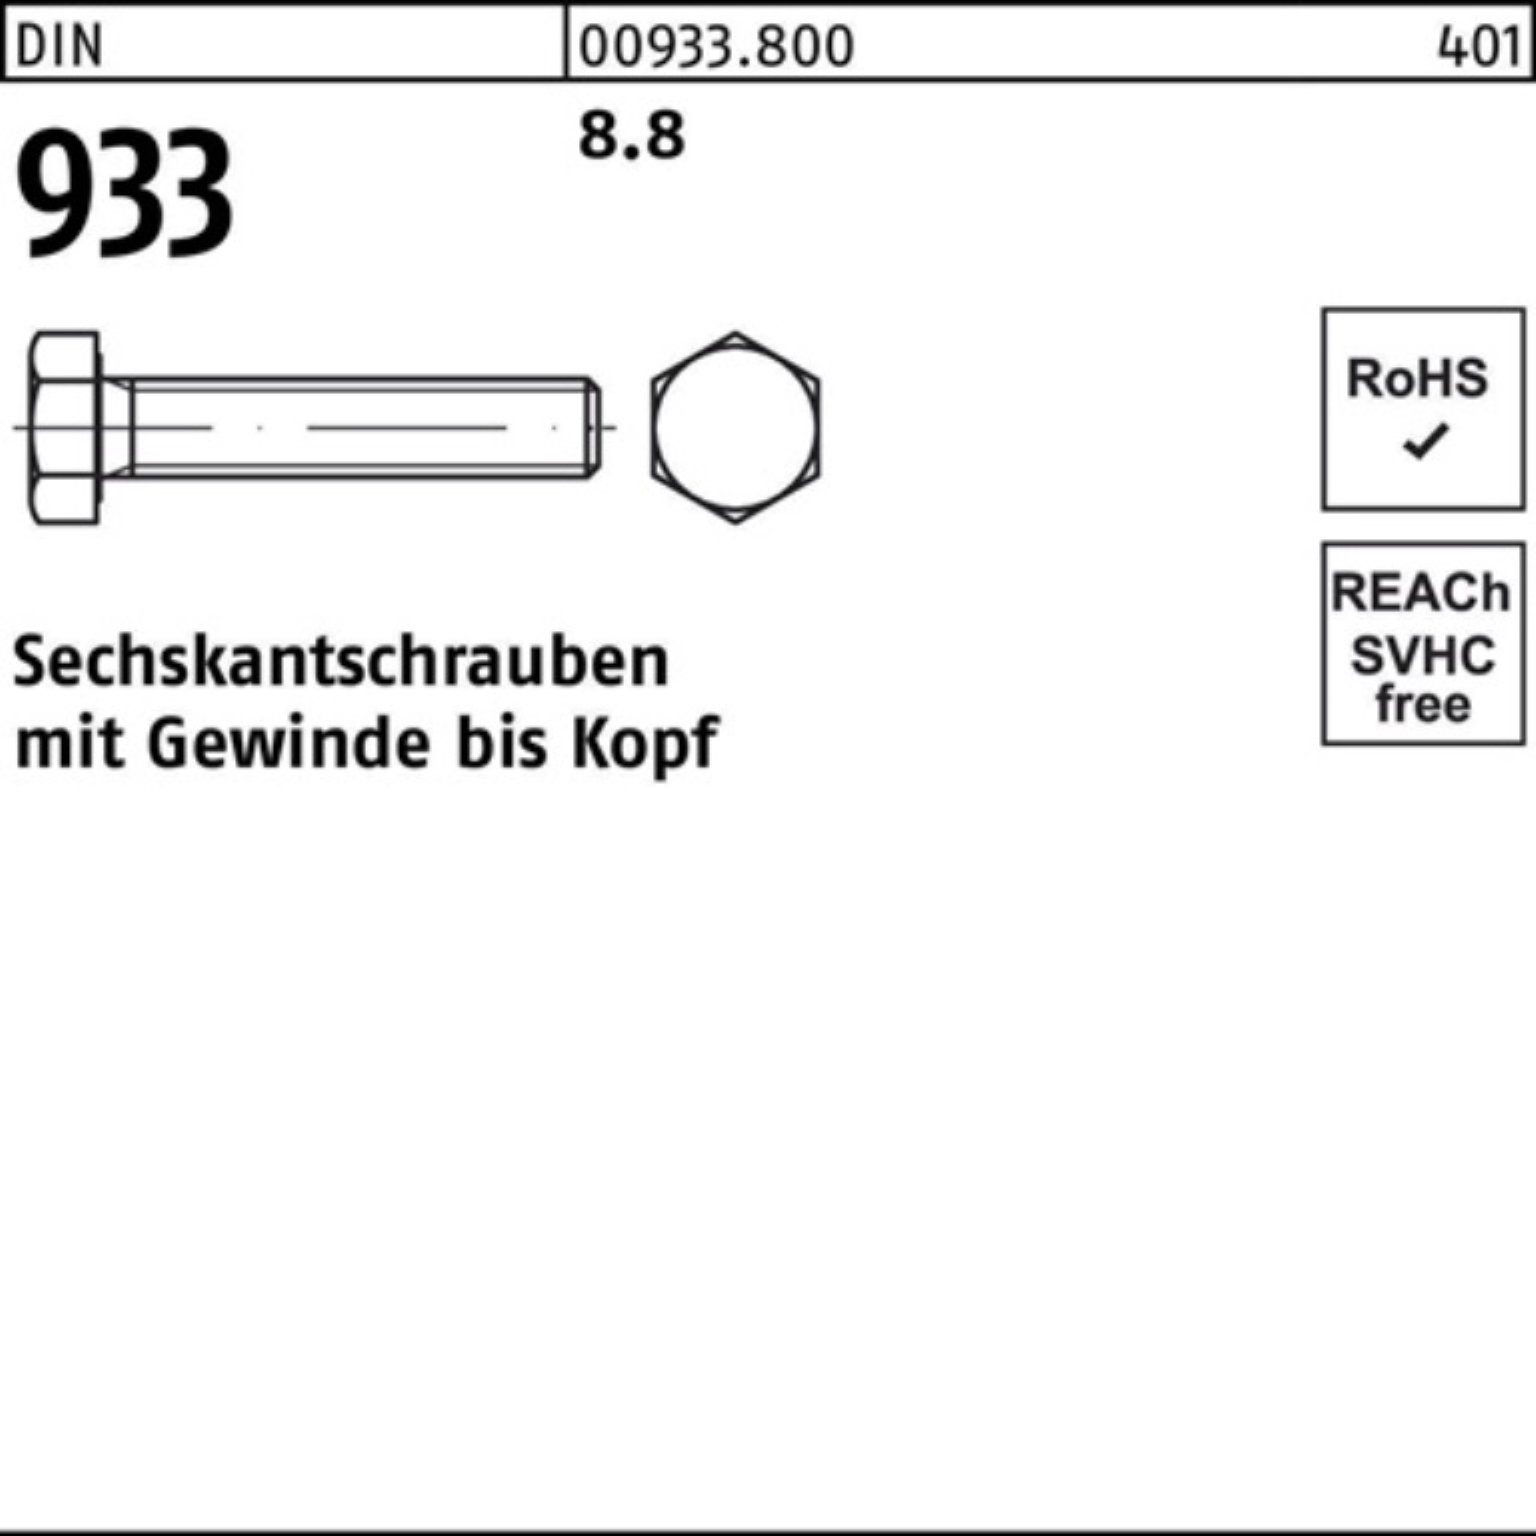 933 Sechskantschraube 100er 1 Pack DIN Reyher 8.8 Sechskantschraube DIN 180 Stück 933 VG M48x